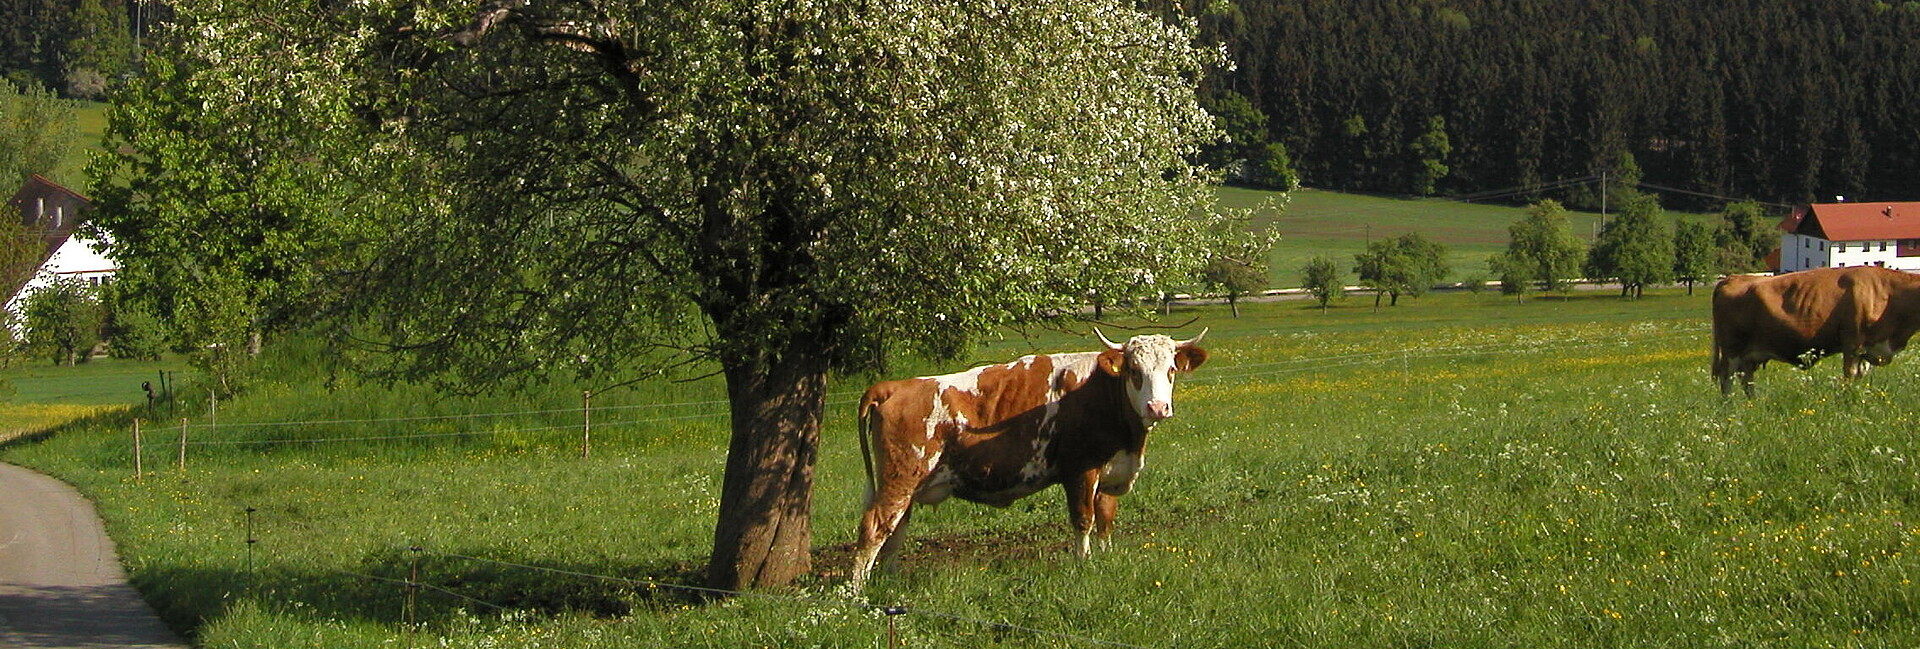 Kuh auf Wiese unter Obstbaum